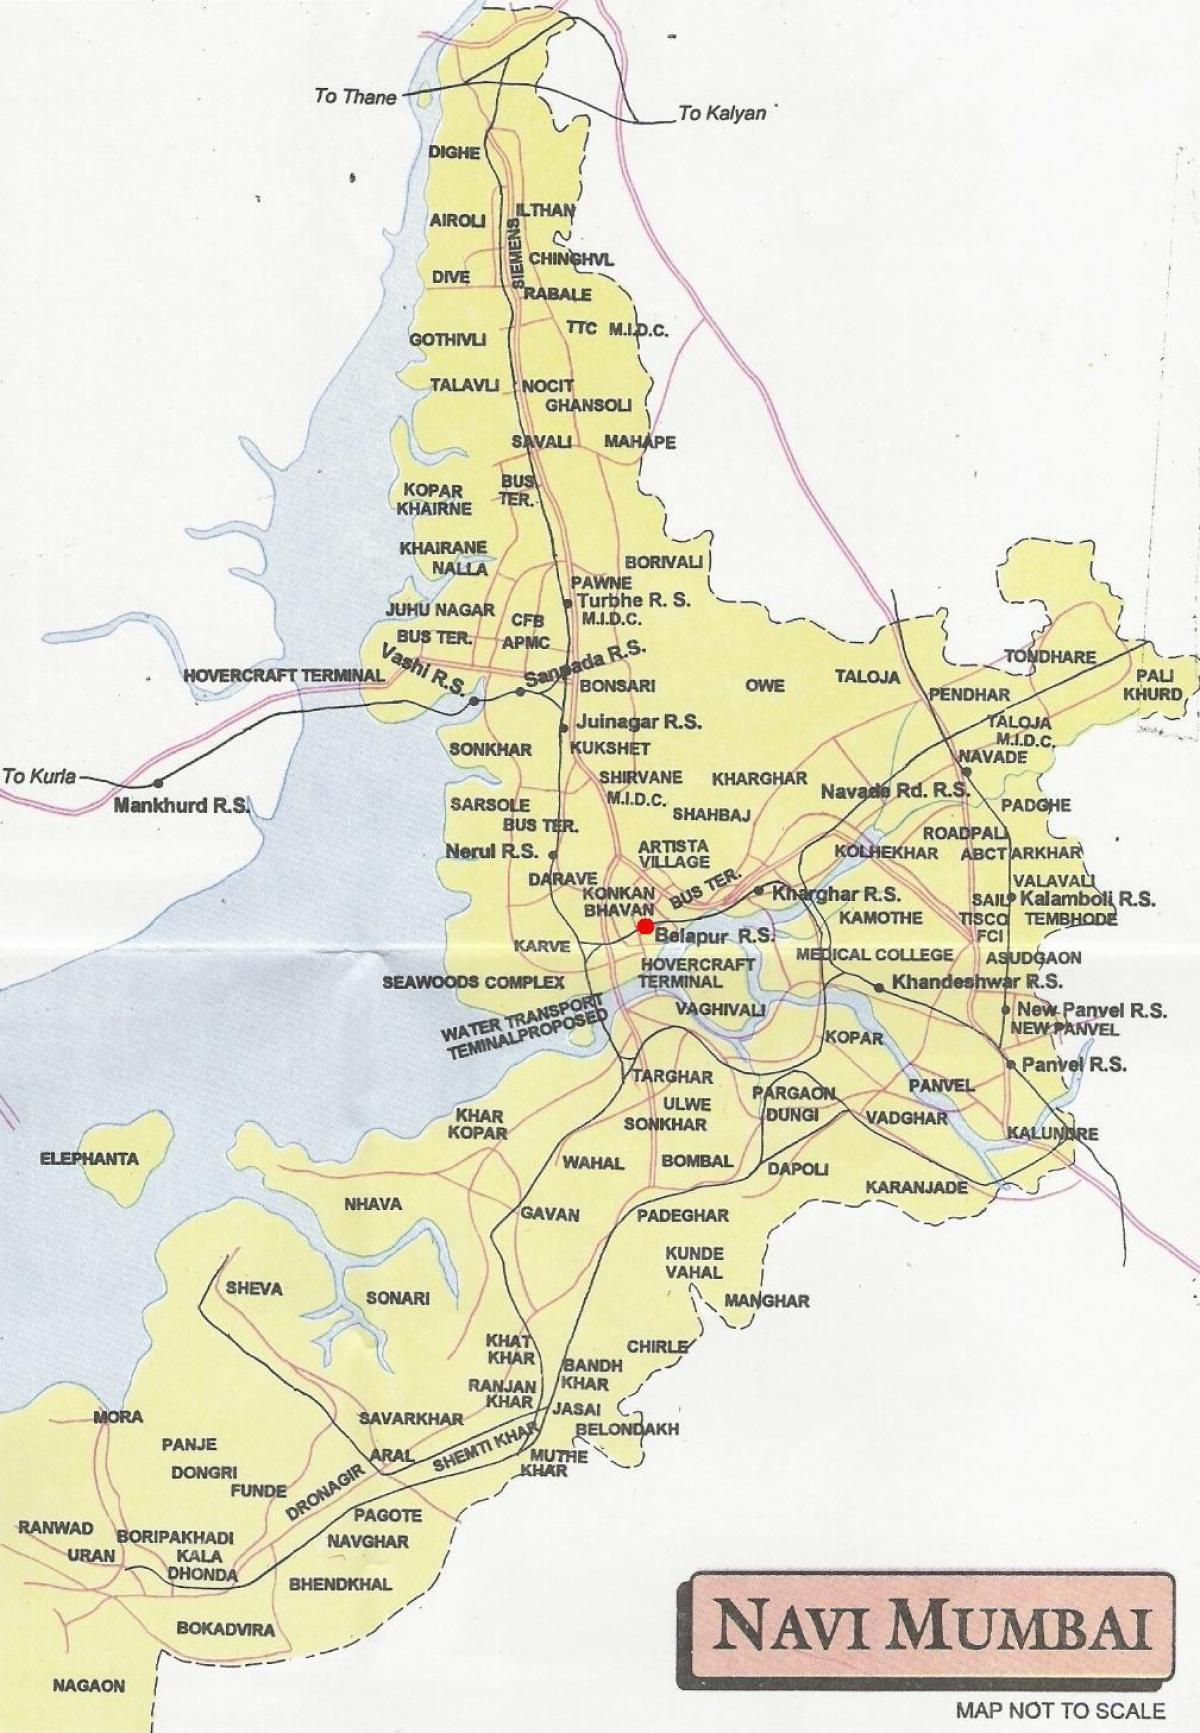 zemljevid navi Mumbaju